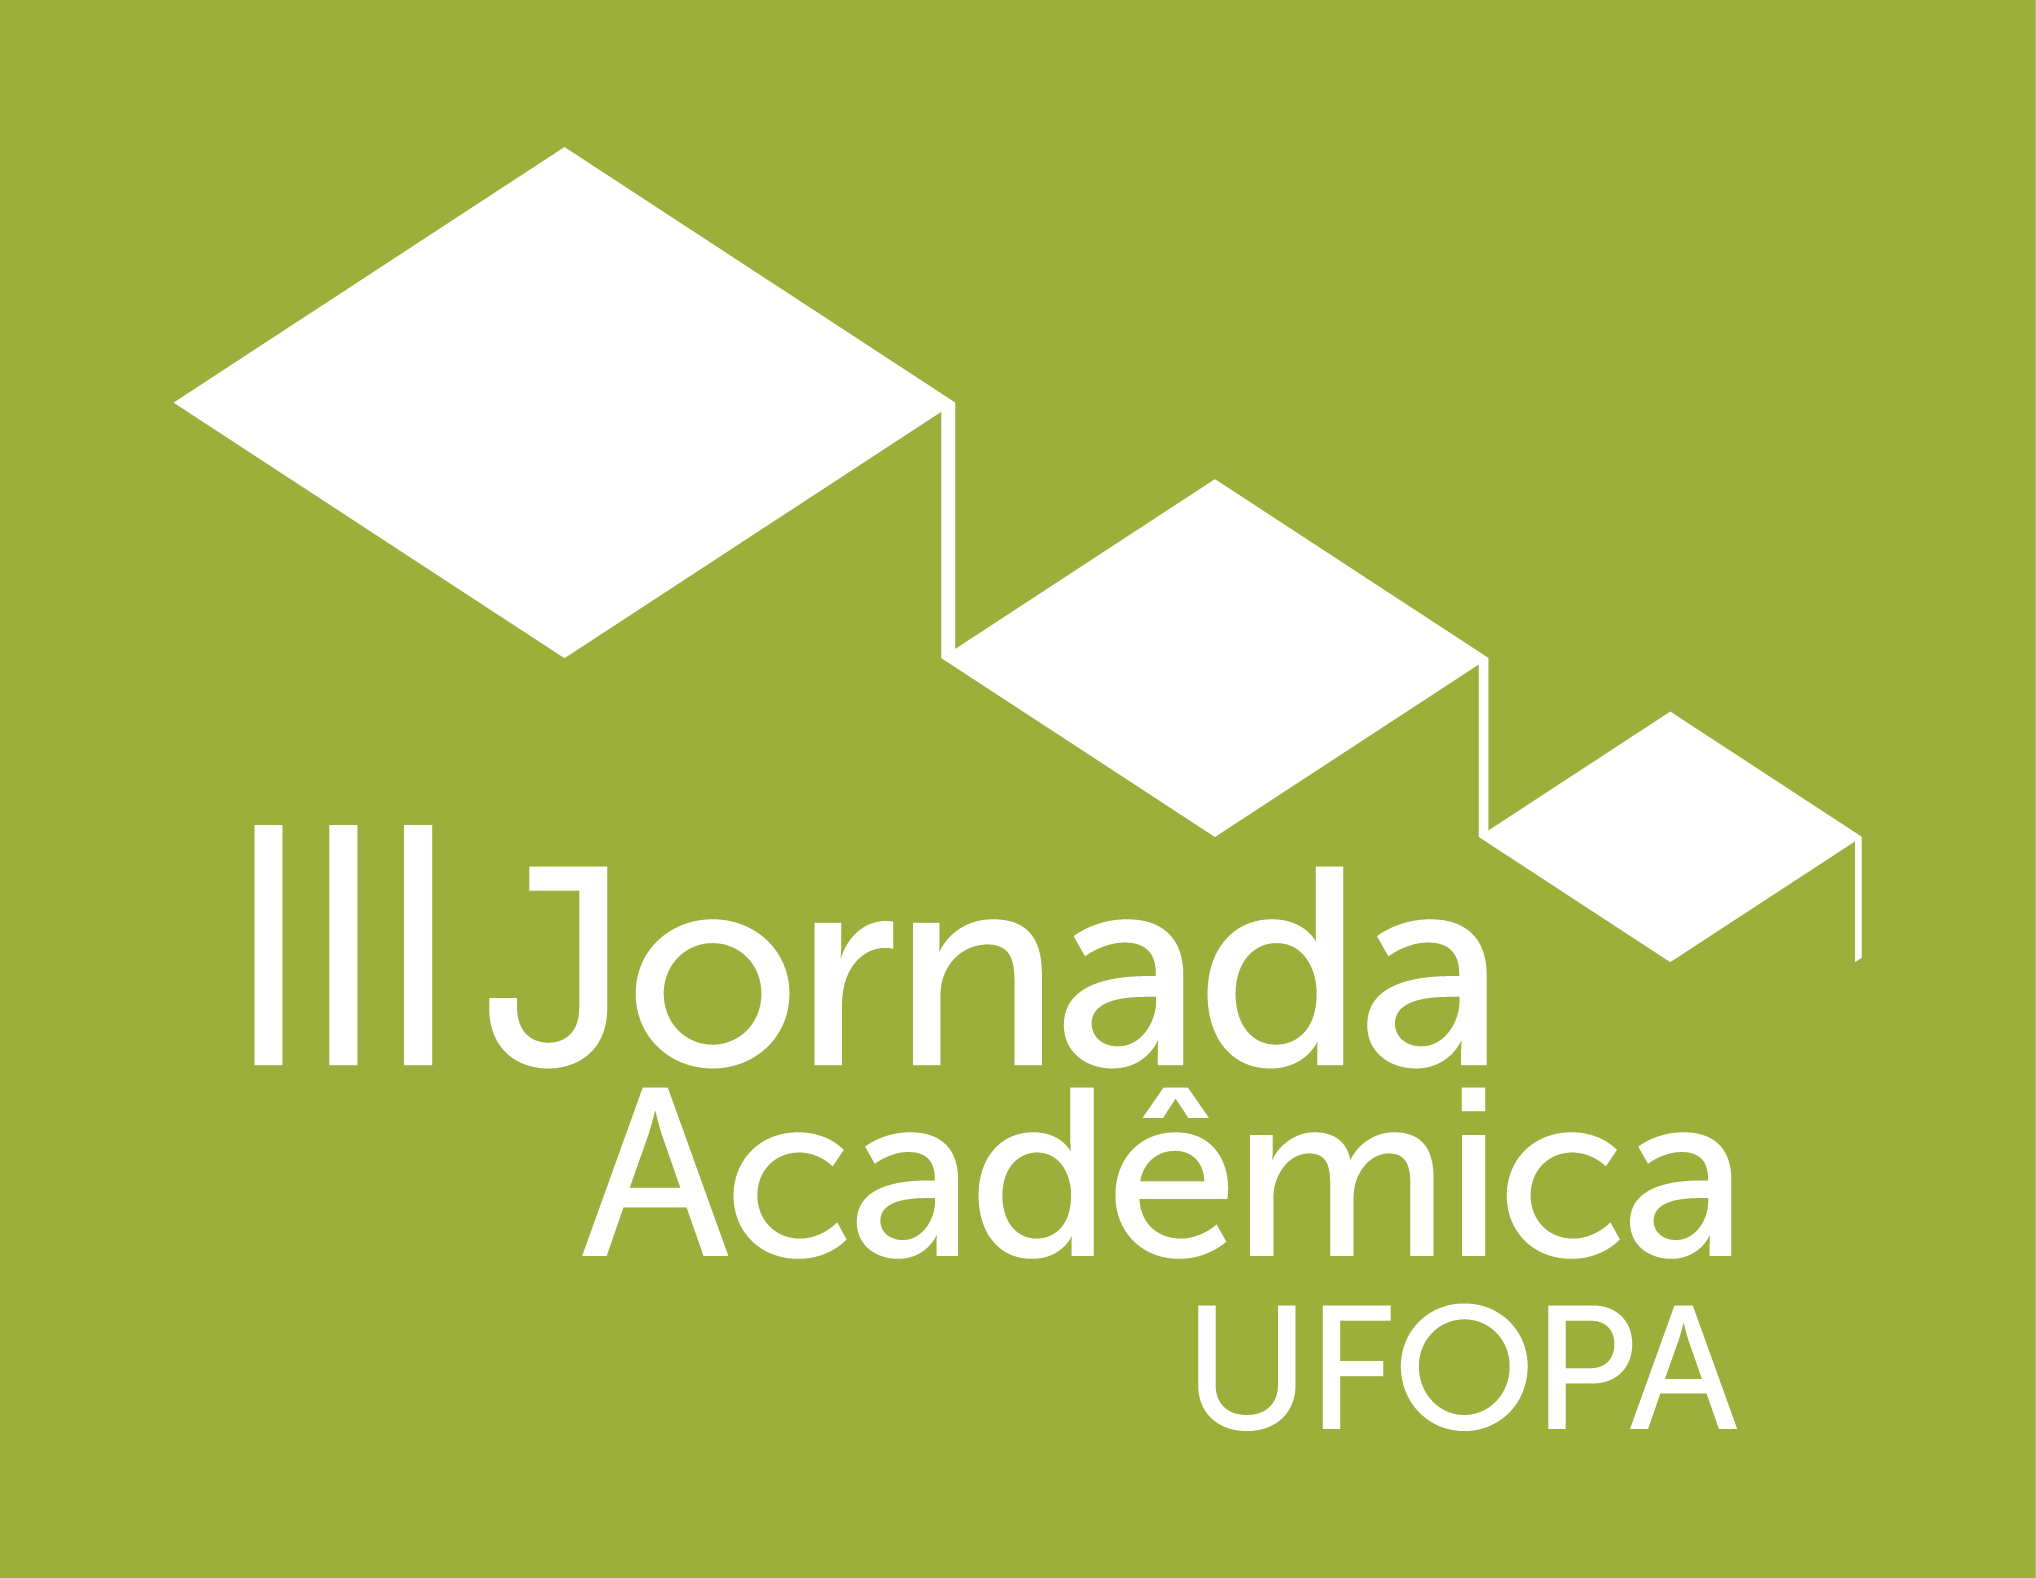 III Jornada Acadêmica da UFOPA será em outubro